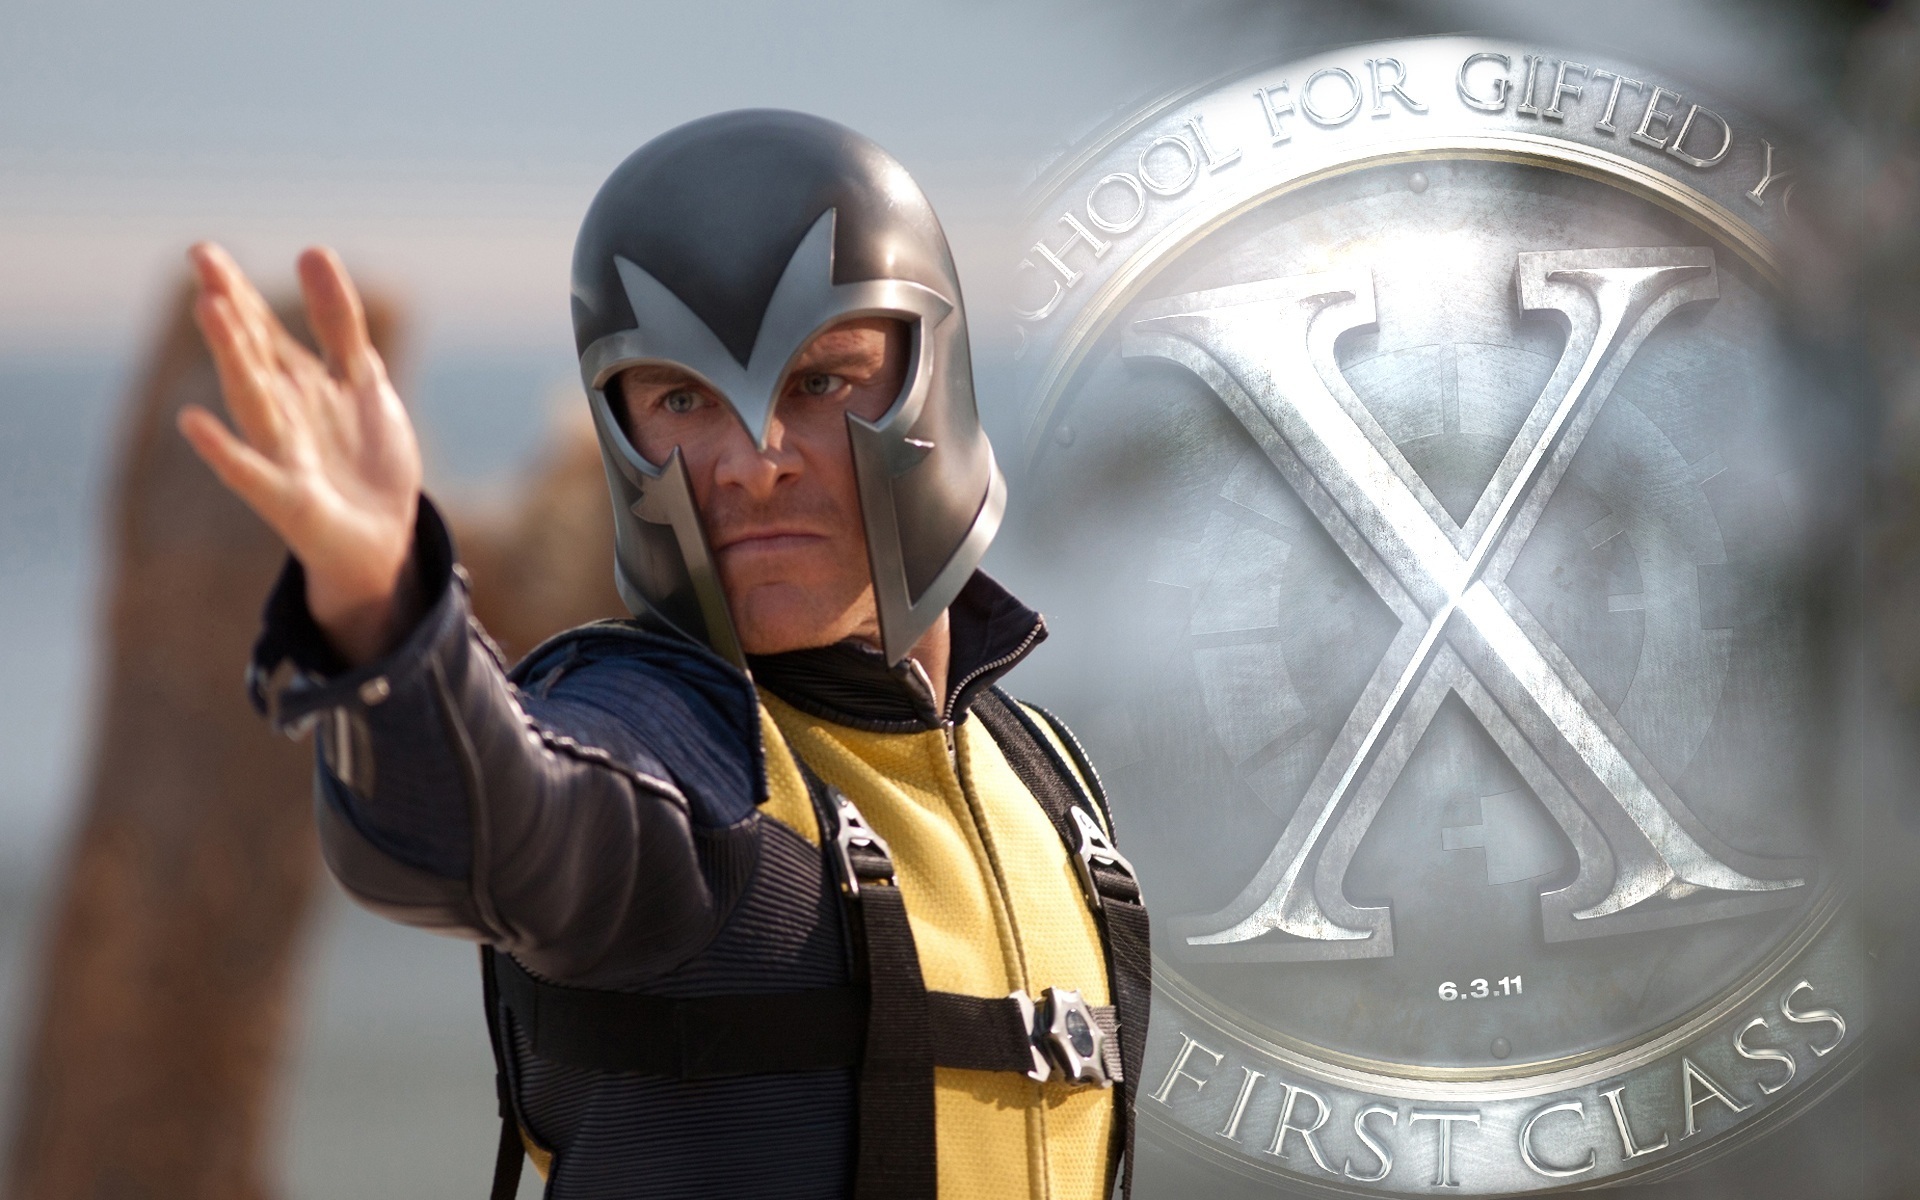 X-Men: First Class Wallpapers